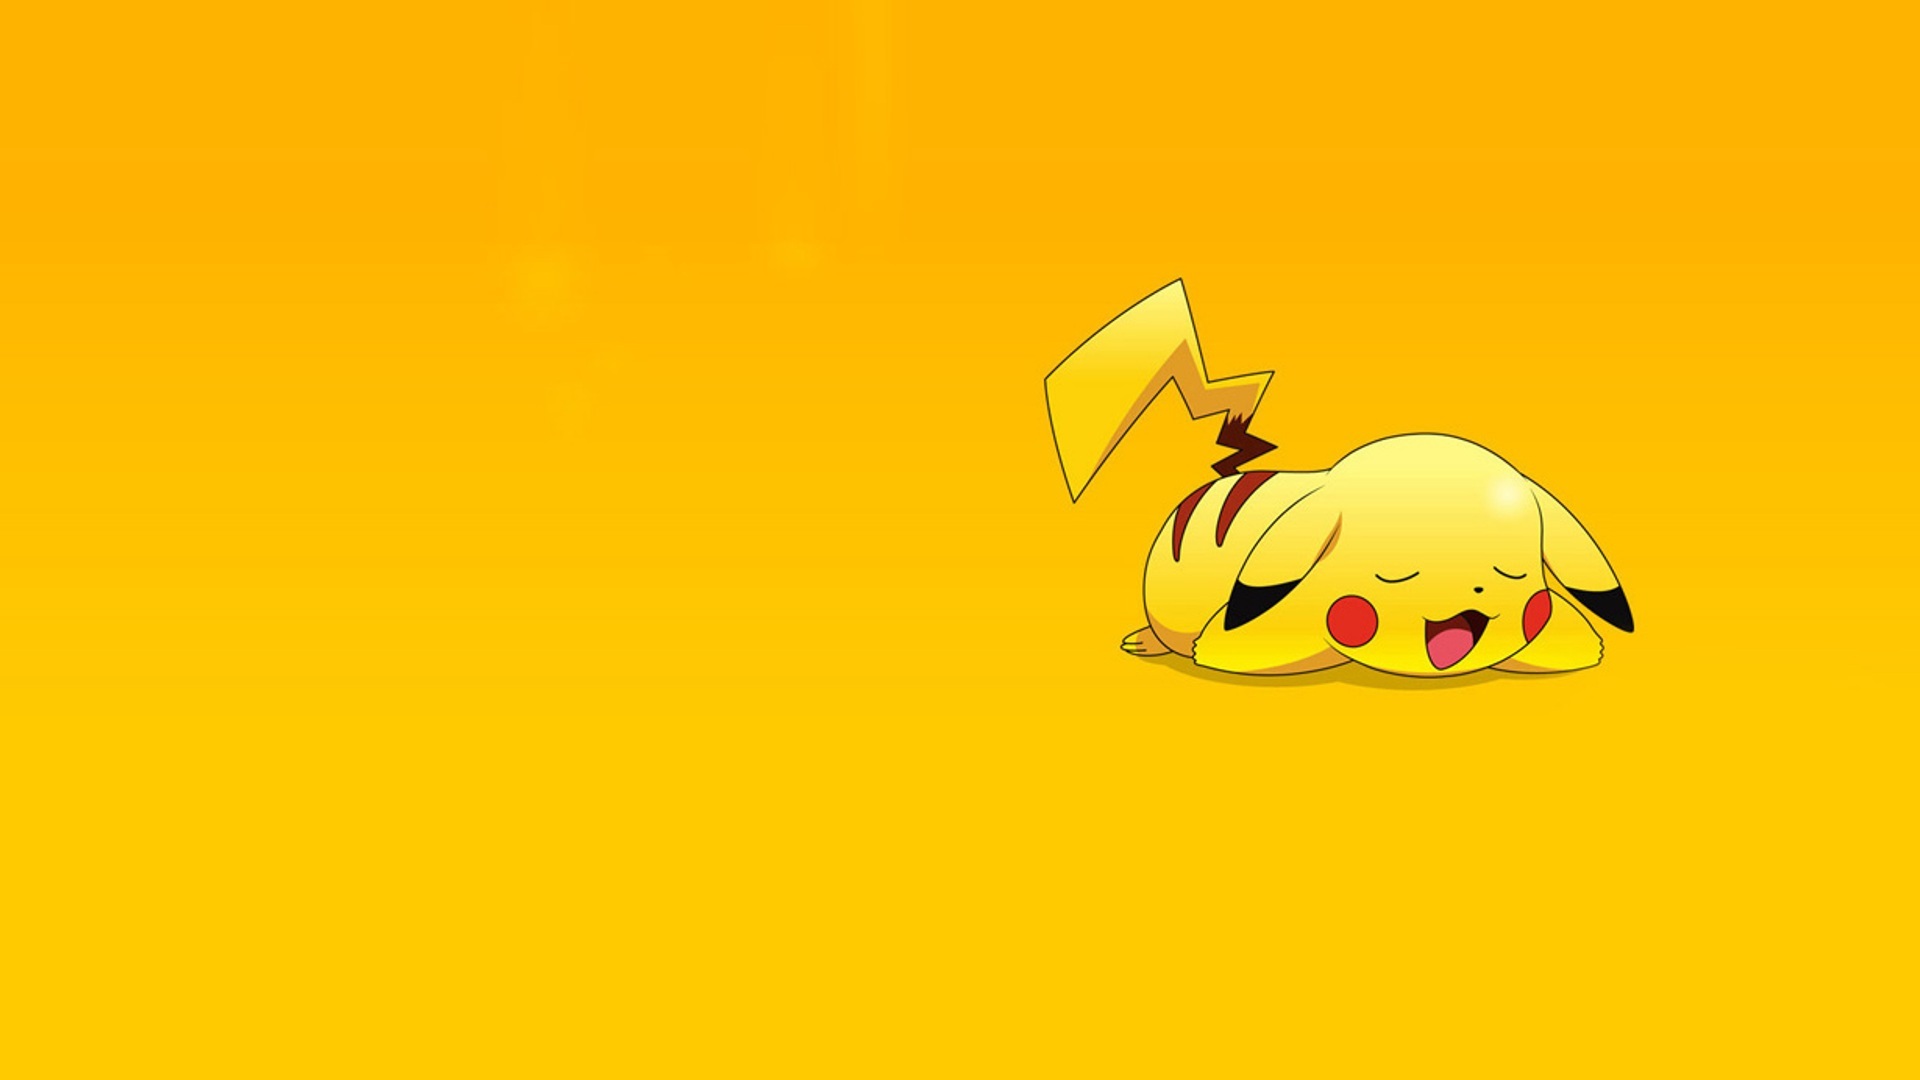 Pikachu Wallpaper - Bạn đang tìm kiếm hình nền đẹp cho màn hình điện thoại của mình? Hãy xem hình ảnh về hình nền Pikachu để tìm kiếm sự đáng yêu và lạ mắt nhất!